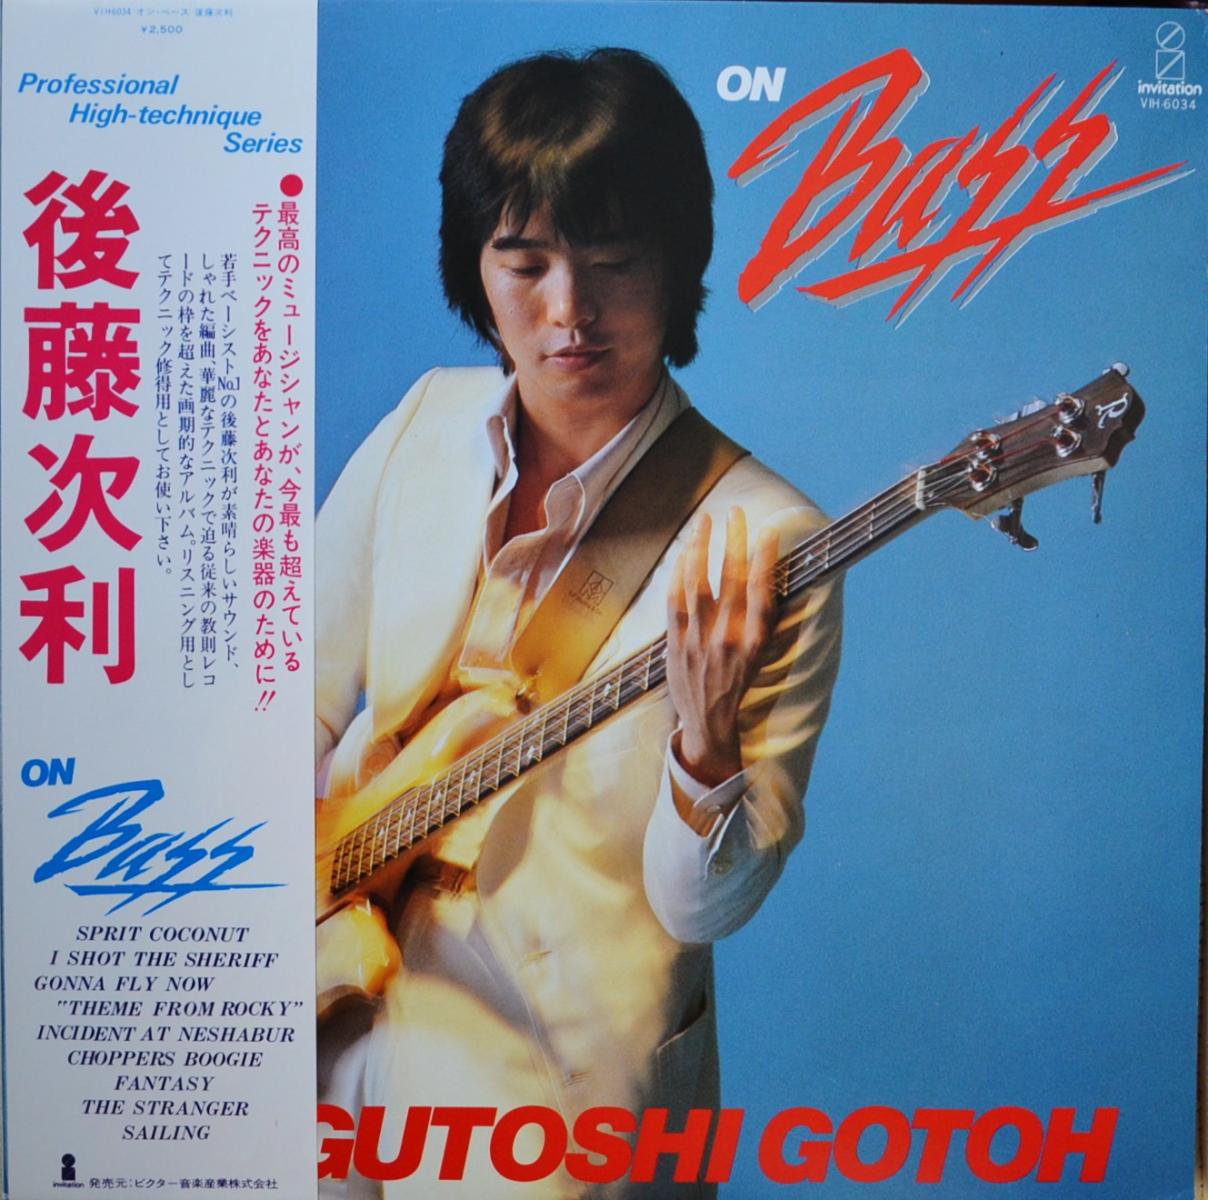 後藤次利 TSUGUTOSHI GOTOH / オン・ベース ON BASS (LP)